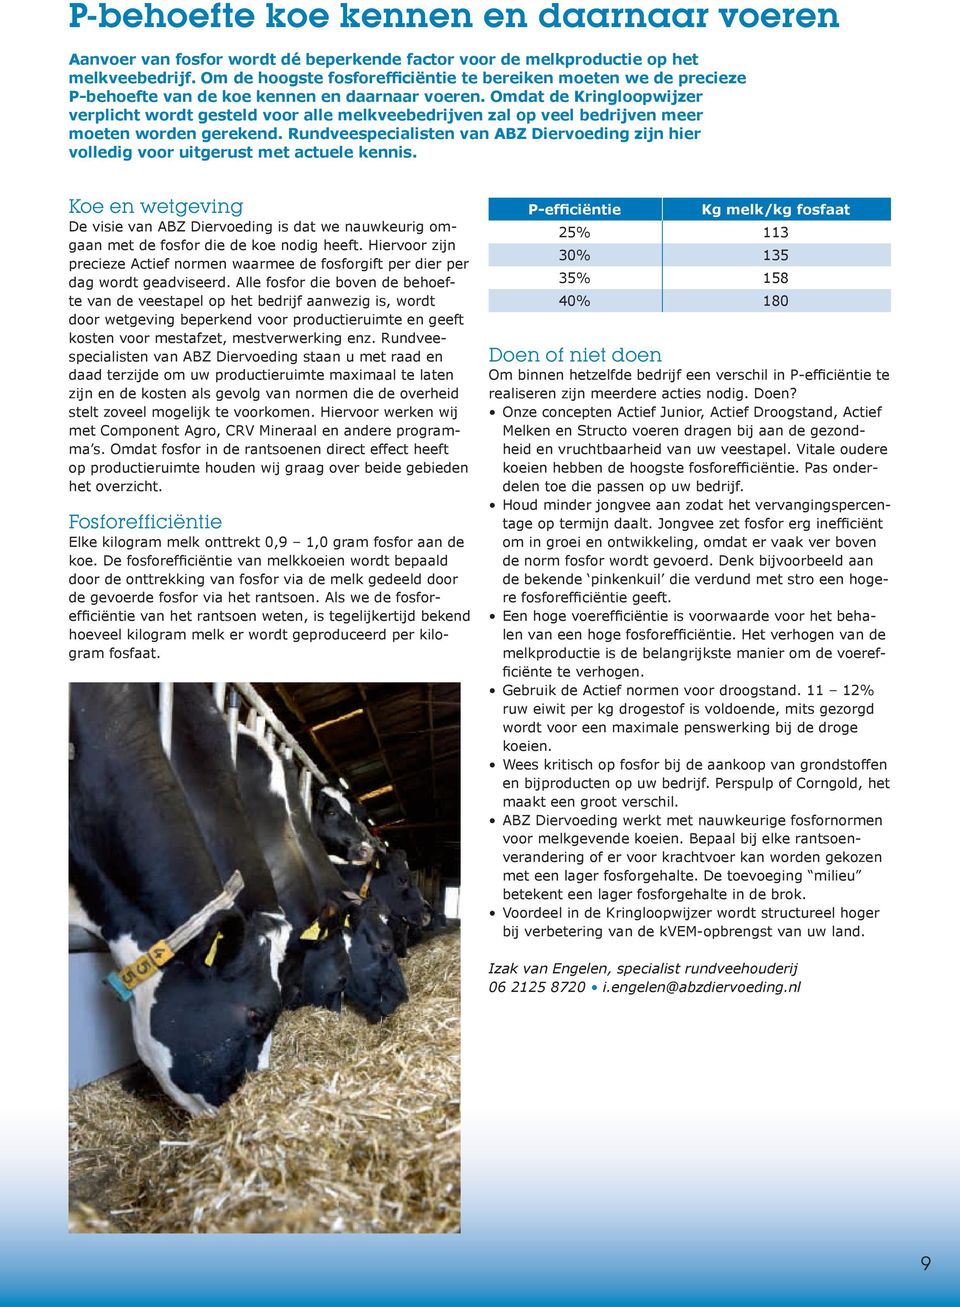 Omdat de Kringloopwijzer verplicht wordt gesteld voor alle melkveebedrijven zal op veel bedrijven meer moeten worden gerekend.